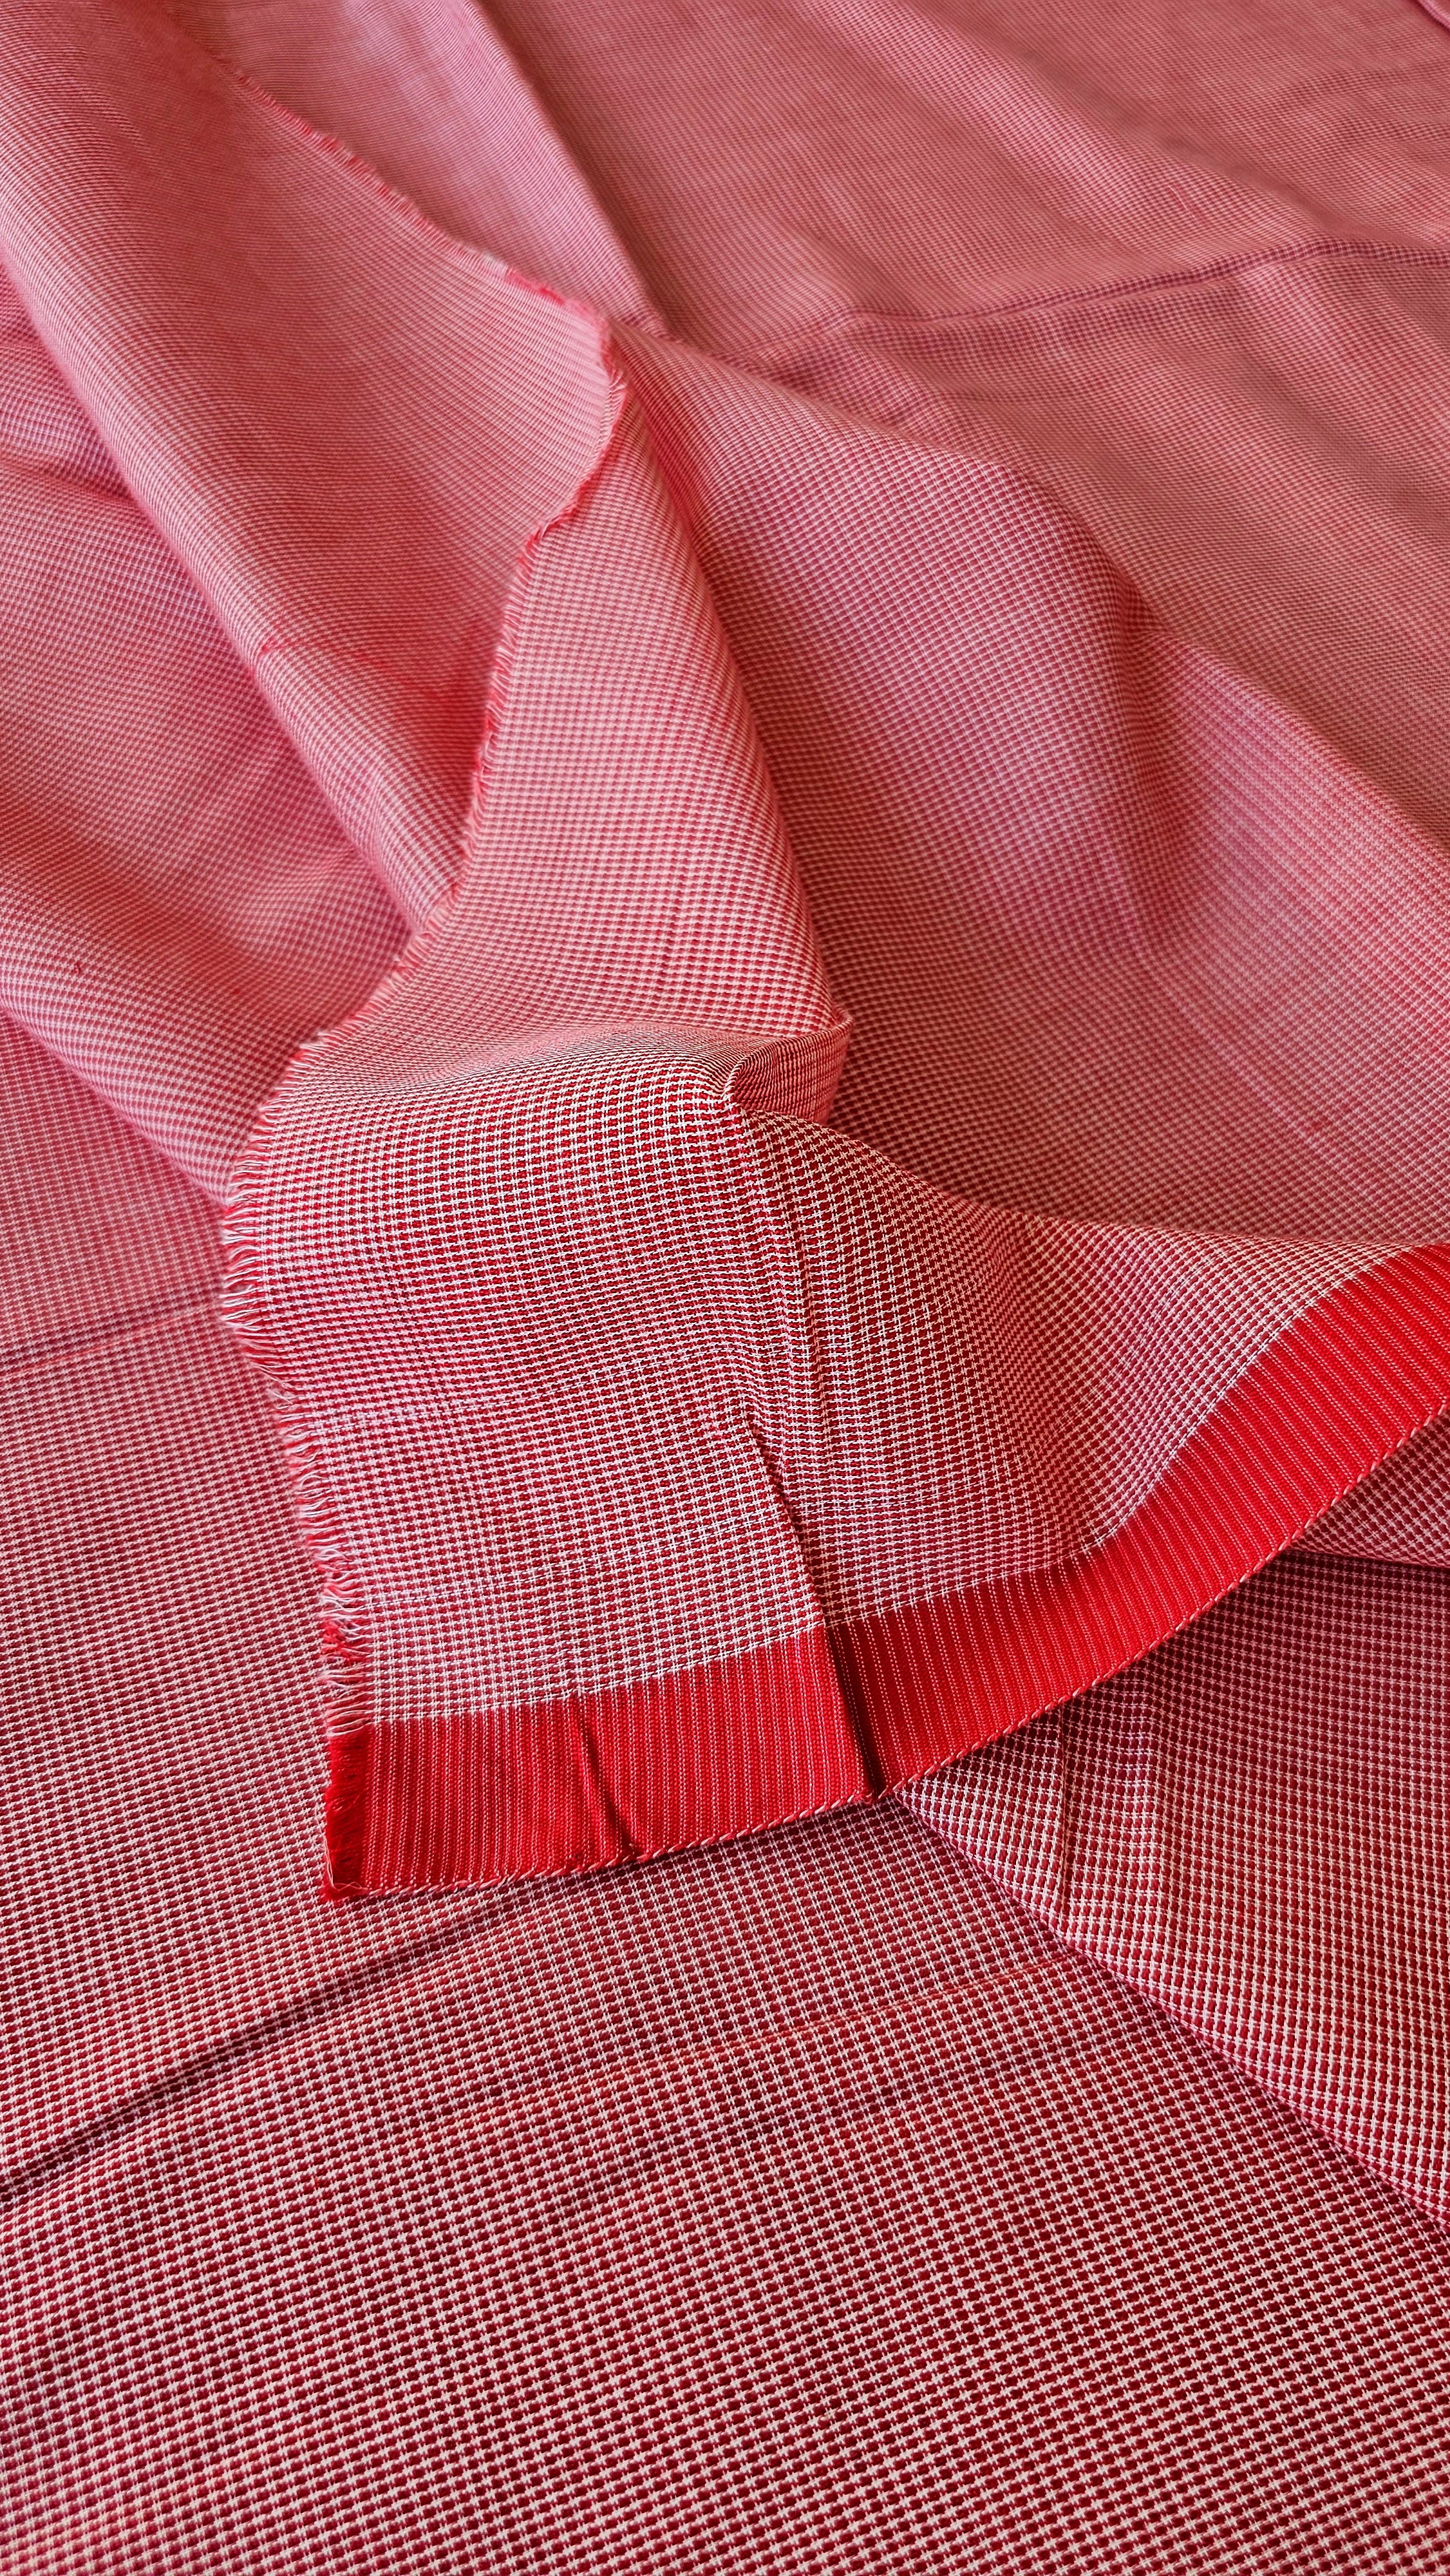 Red & White fine Checks Fabric in pure Cotton Texture.